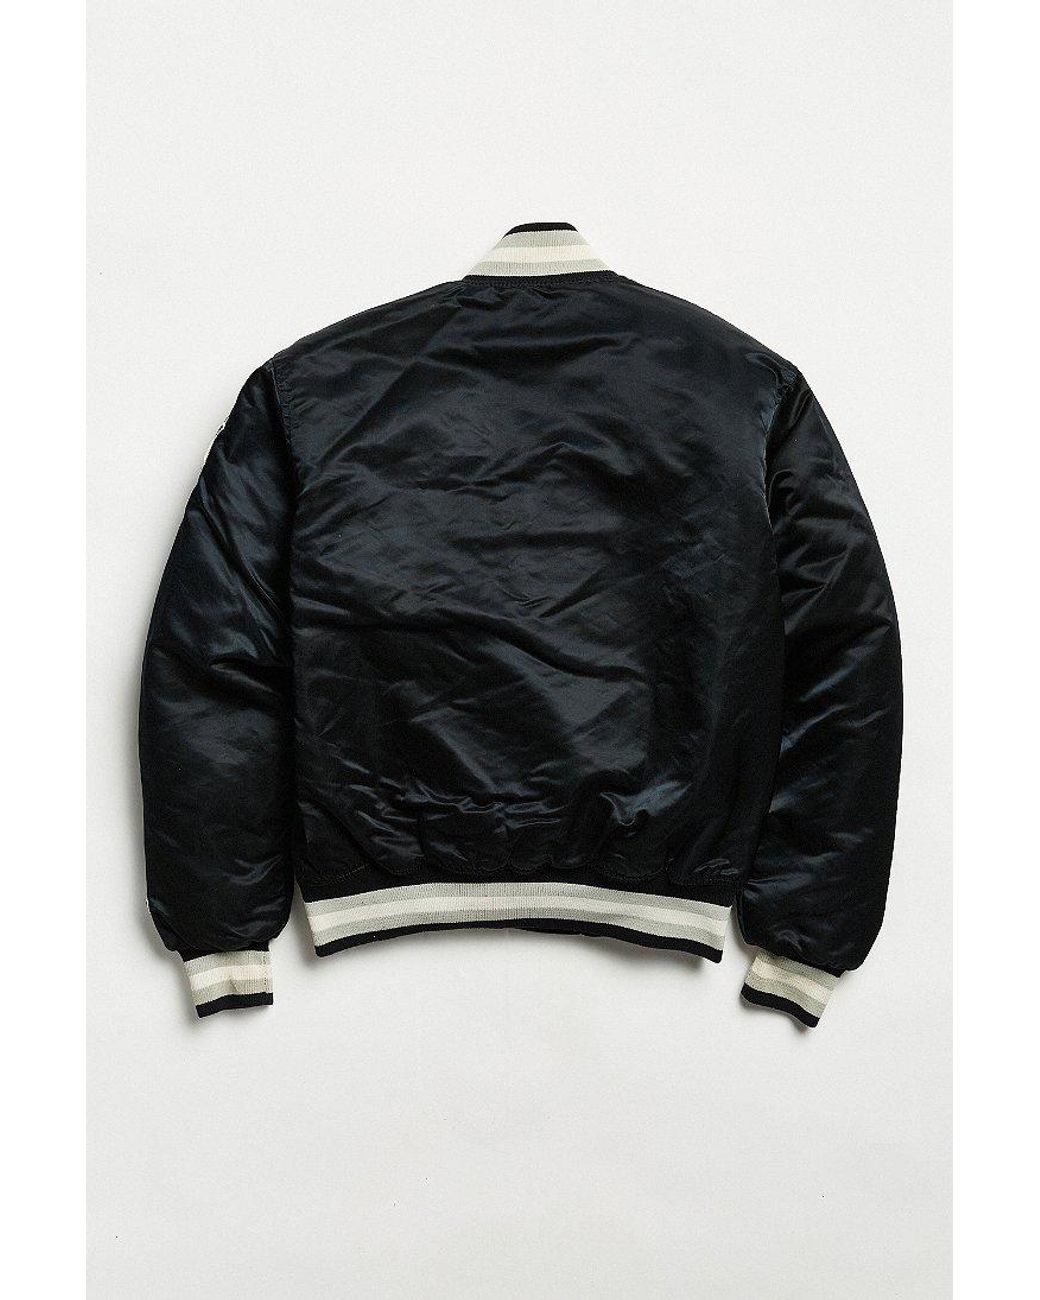 Starter Los Angeles kings parka jacket vintage vintage for Sale in